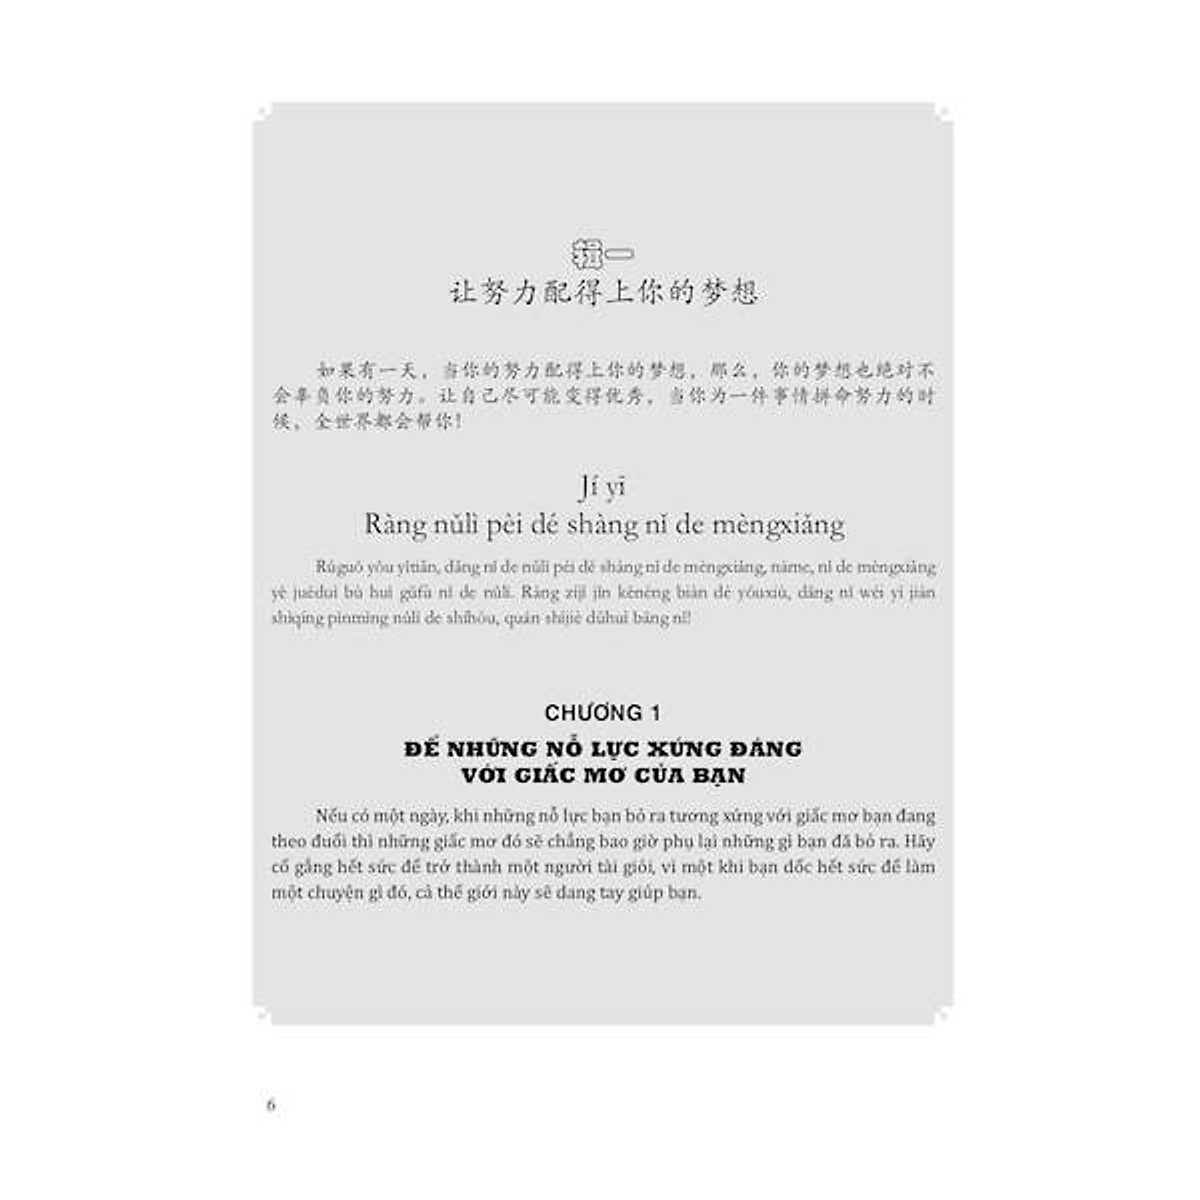 Combo 2 sách: 999 bức thư viết cho tương lai + Giáo trình Hán ngữ quyển 1 – Quyển thượng 1 + DVD quà tặng